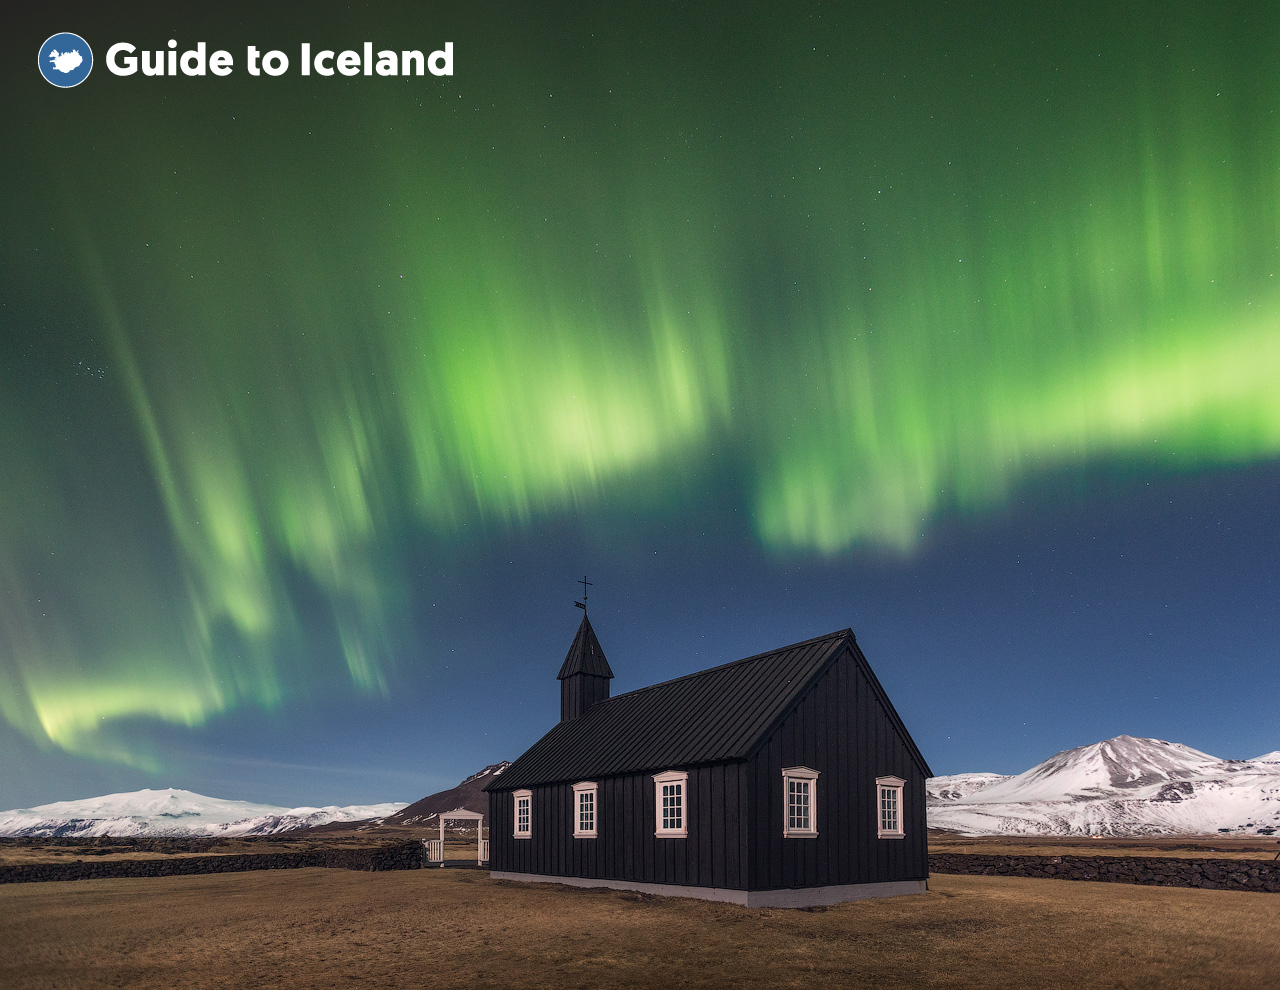 Die dünn besiedelte Halbinsel Snæfellsnes im Westen Islands ist ideal für die Polarlichtjagd.